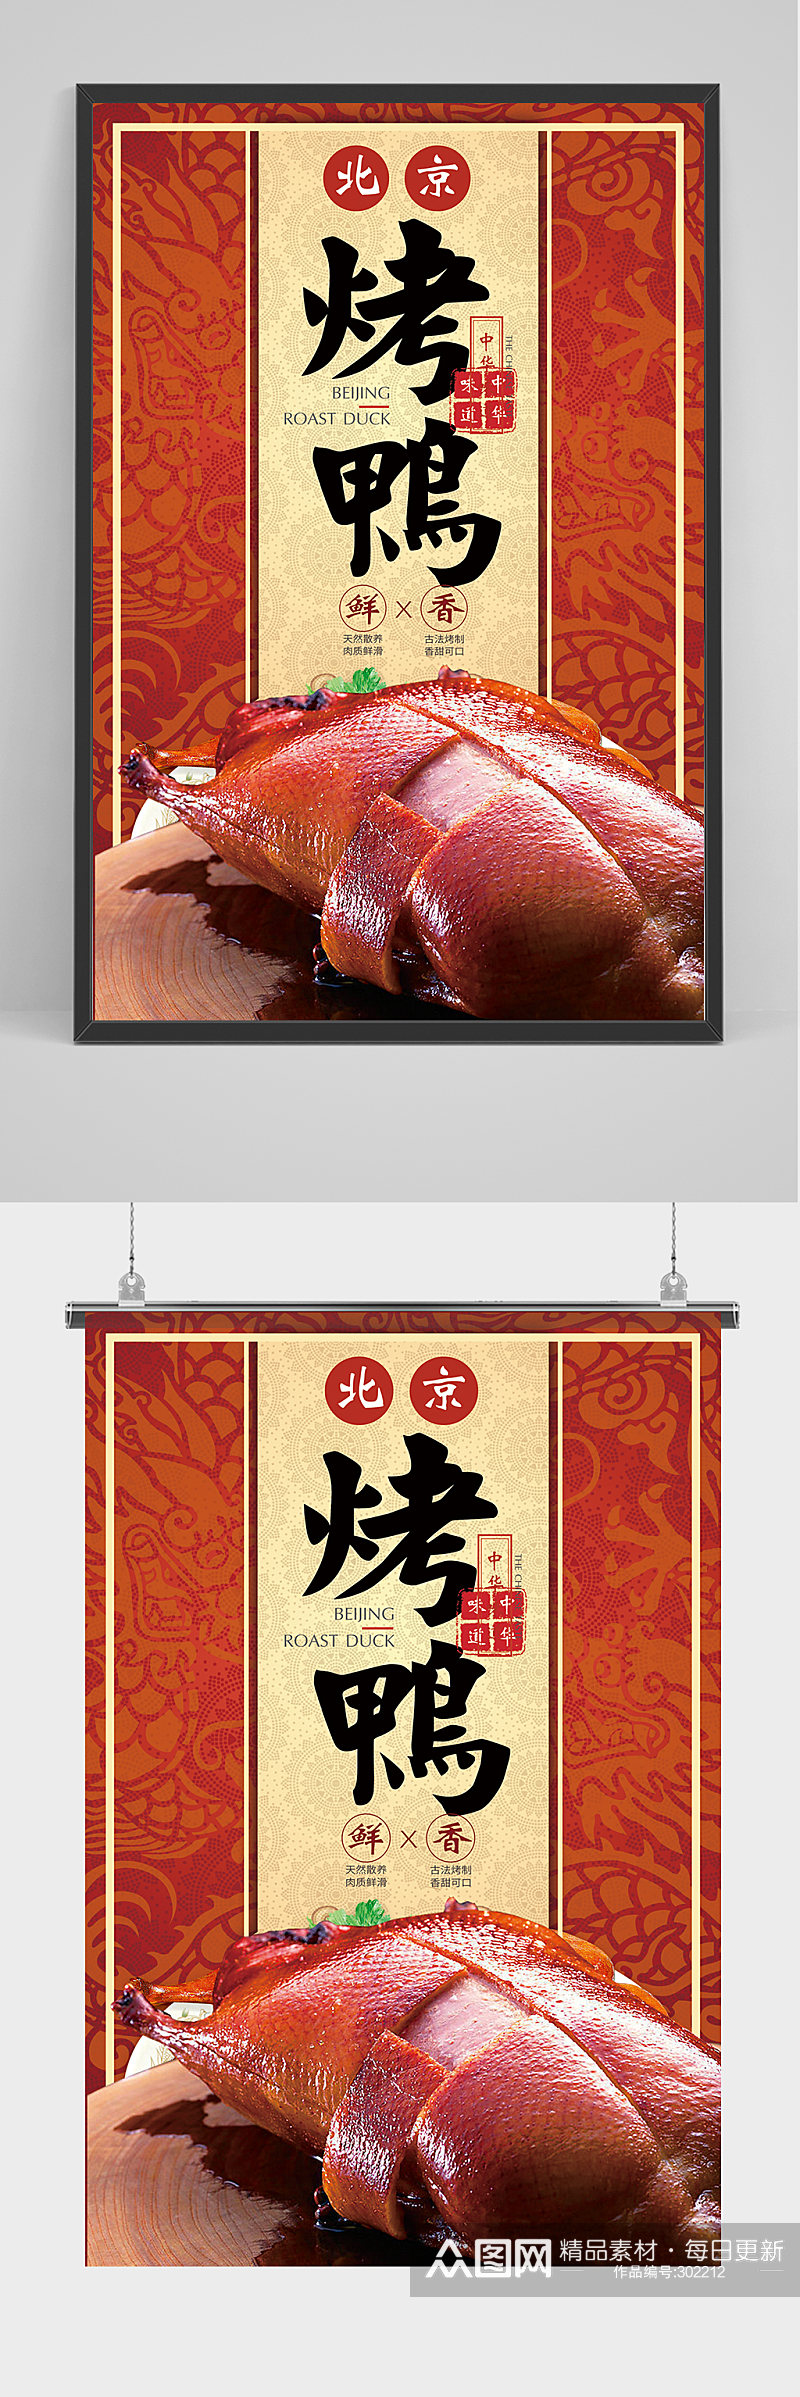 喜庆精品北京烤鸭海报设计素材